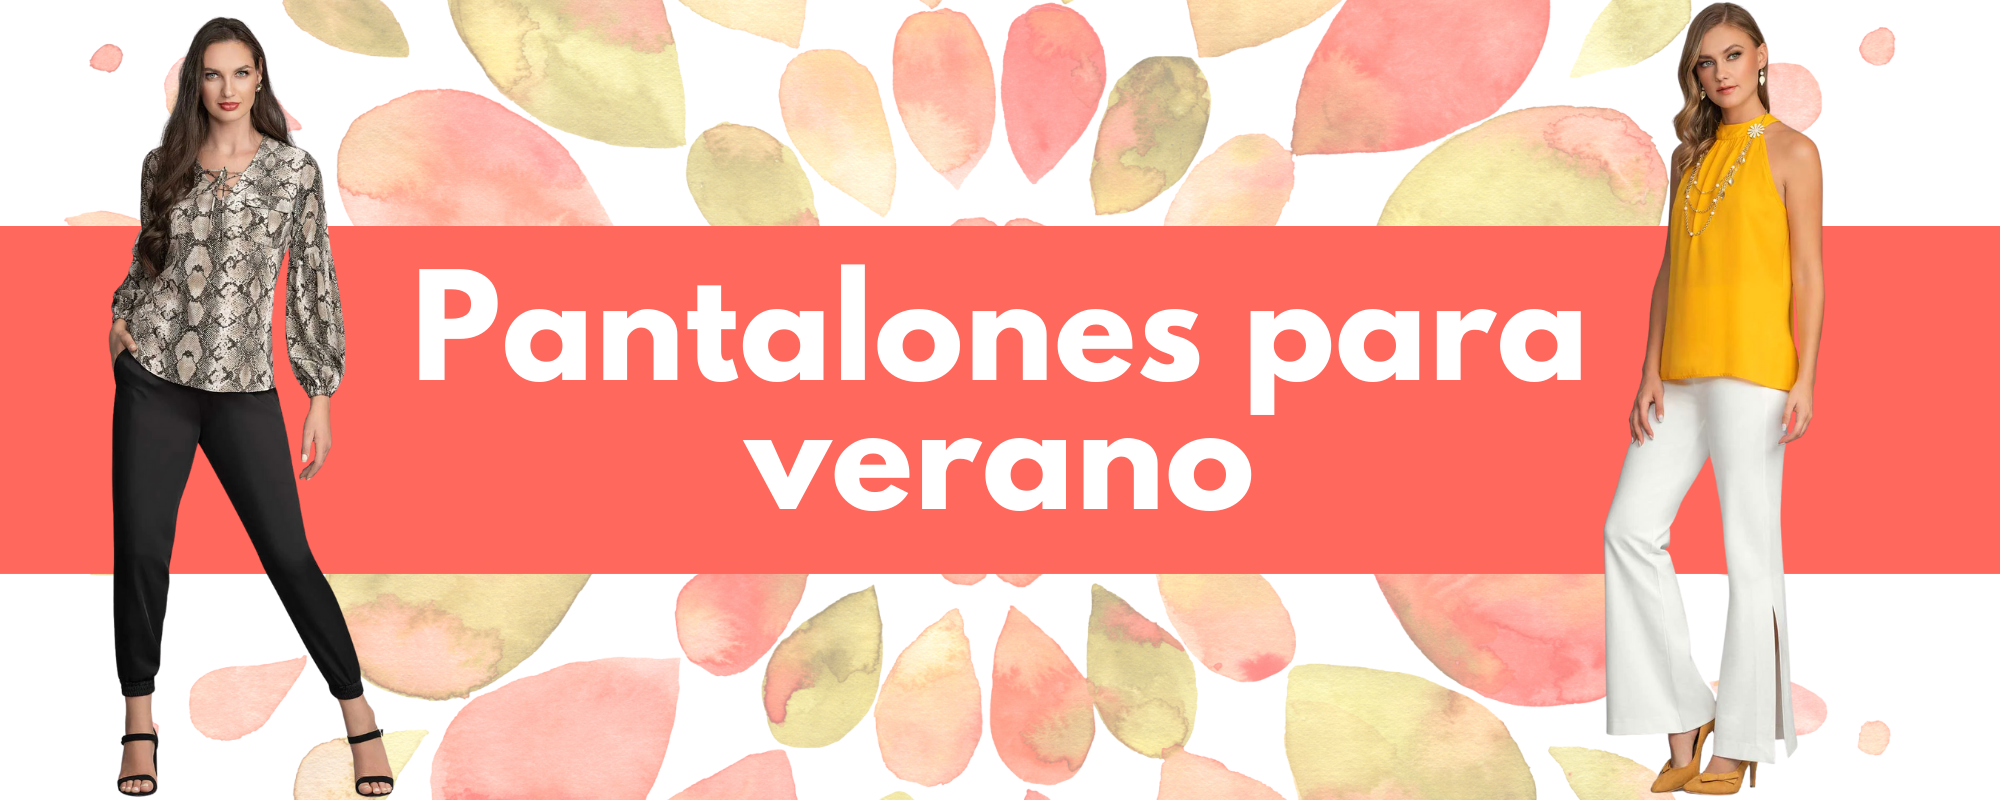 5 TIPOS DE PANTALONES IDEALES PARA LLEVAR EN VERANO 🌞 – CHERRY Online